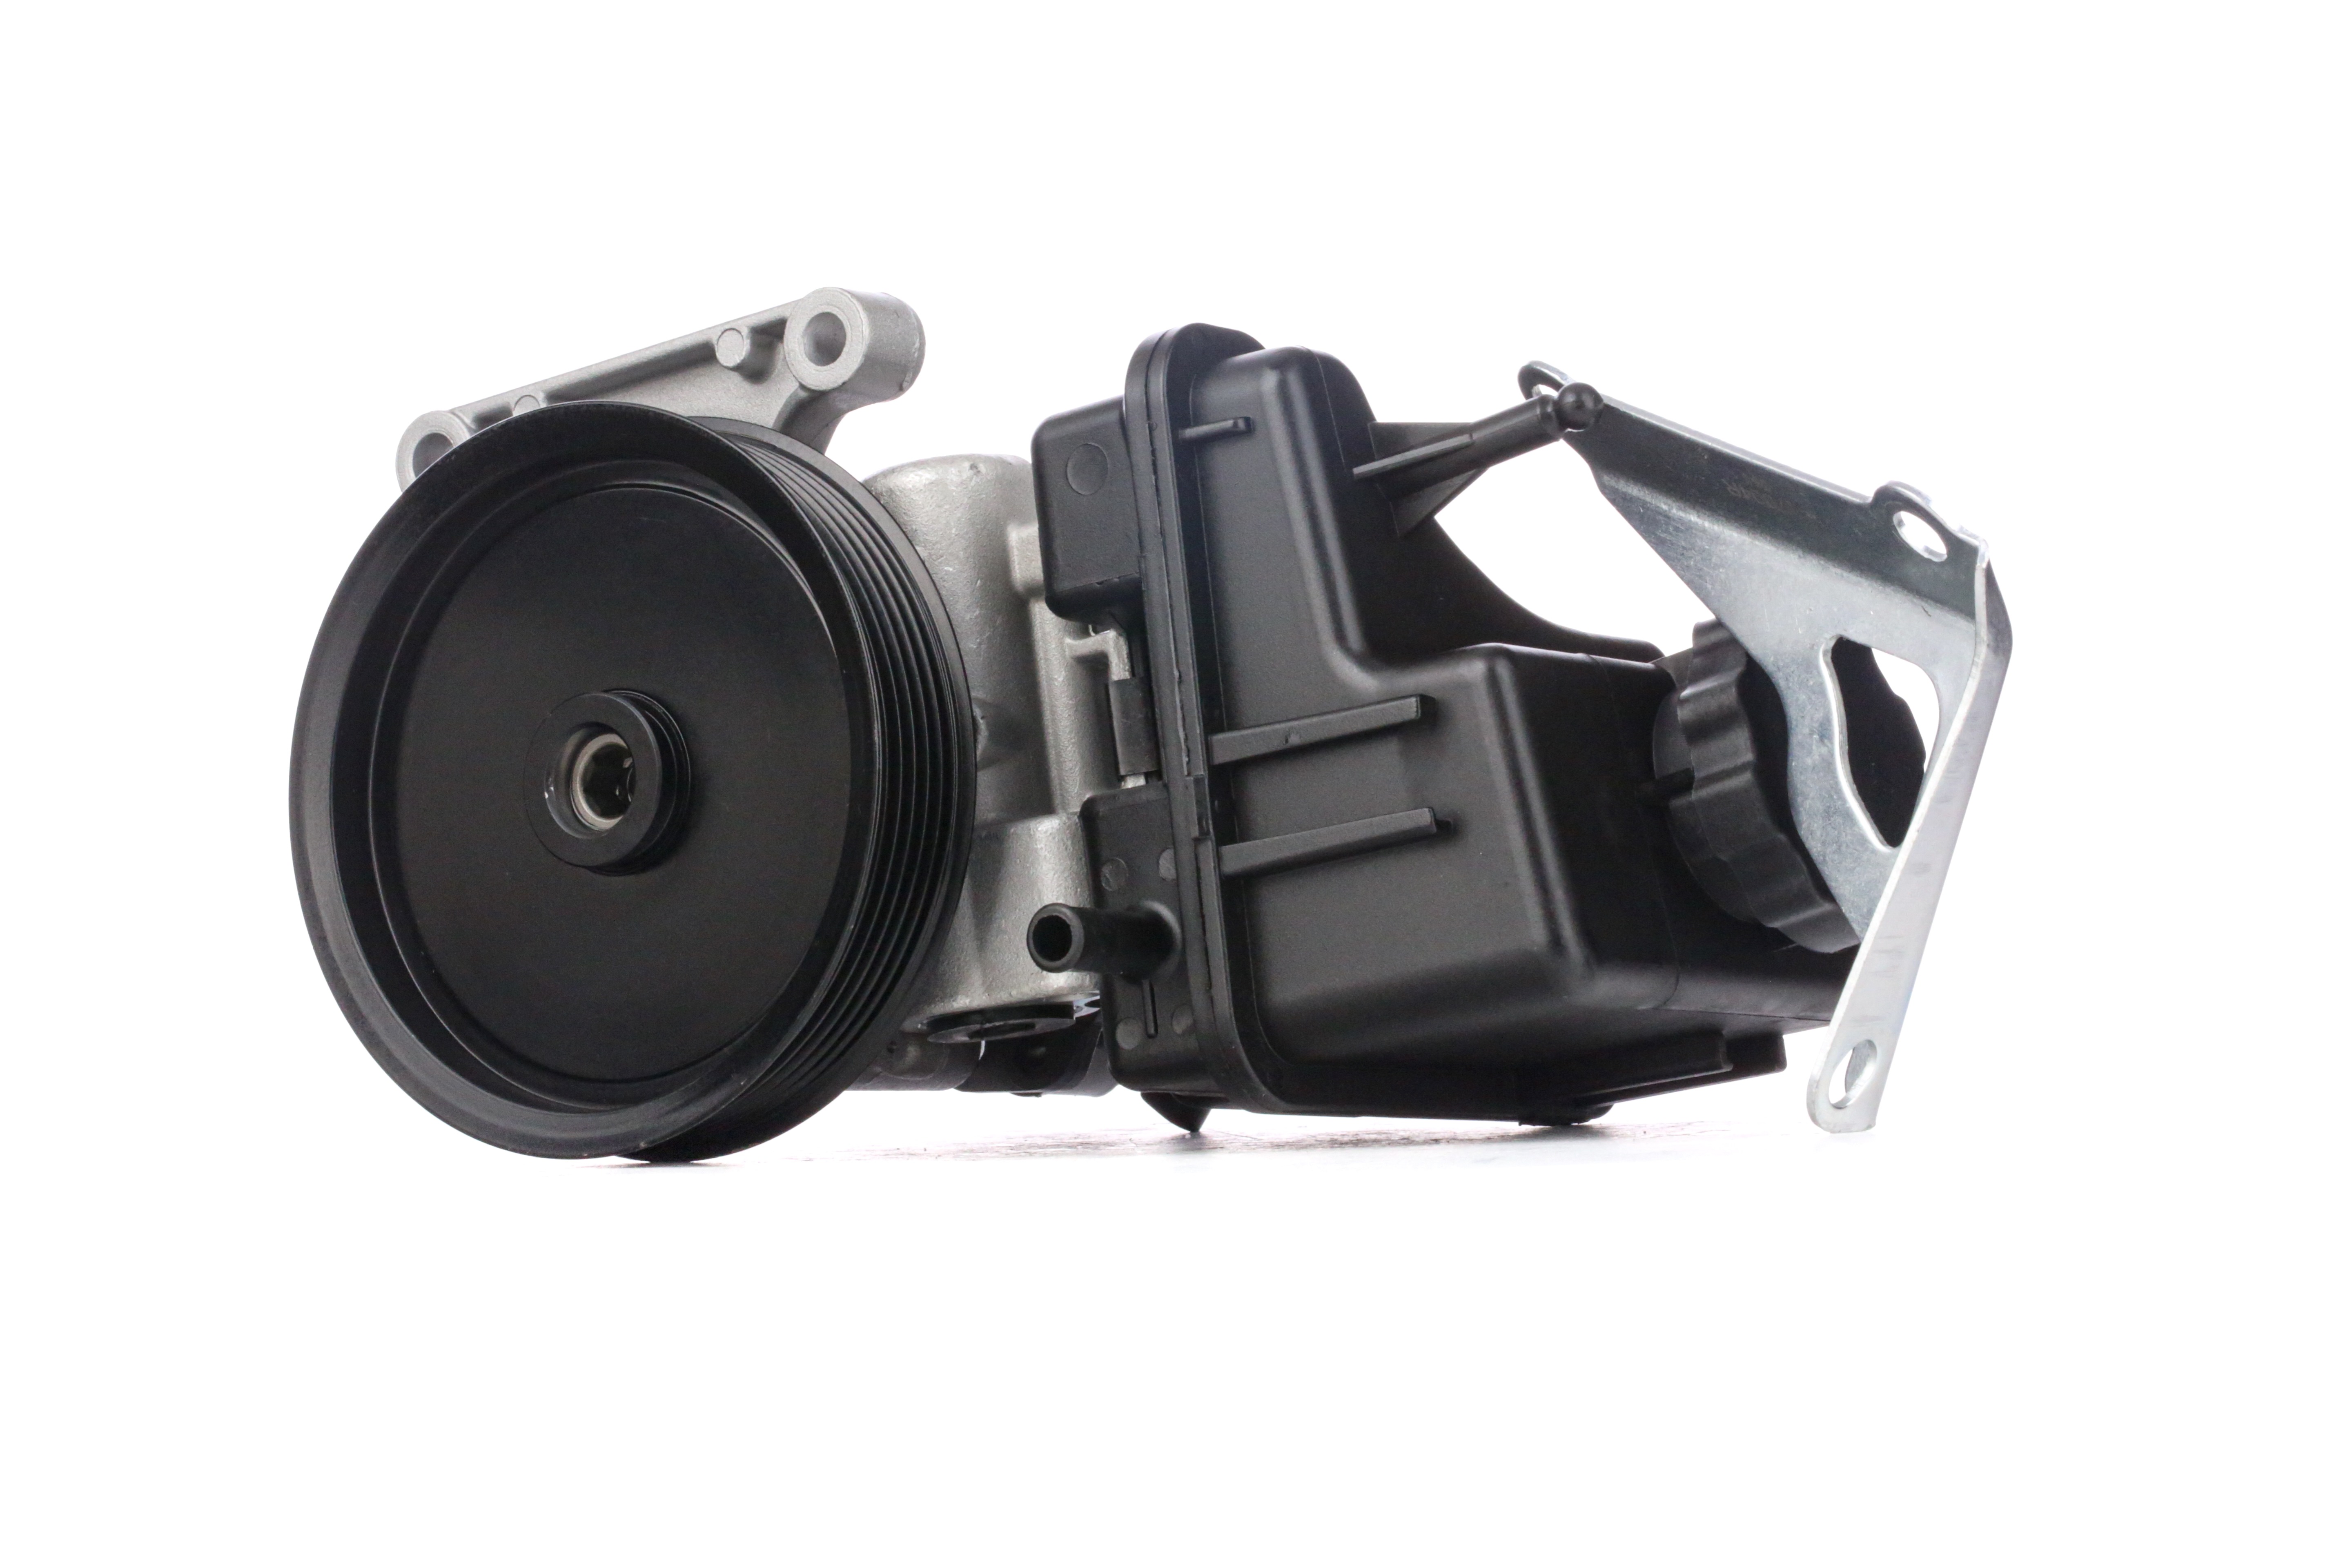 STARK SKHP-0540210 Power steering pump Hydraulic, Number of grooves: 6, Belt Pulley Ø: 120 mm, Pressure-limiting Valve, Vane Pump, Clockwise rotation